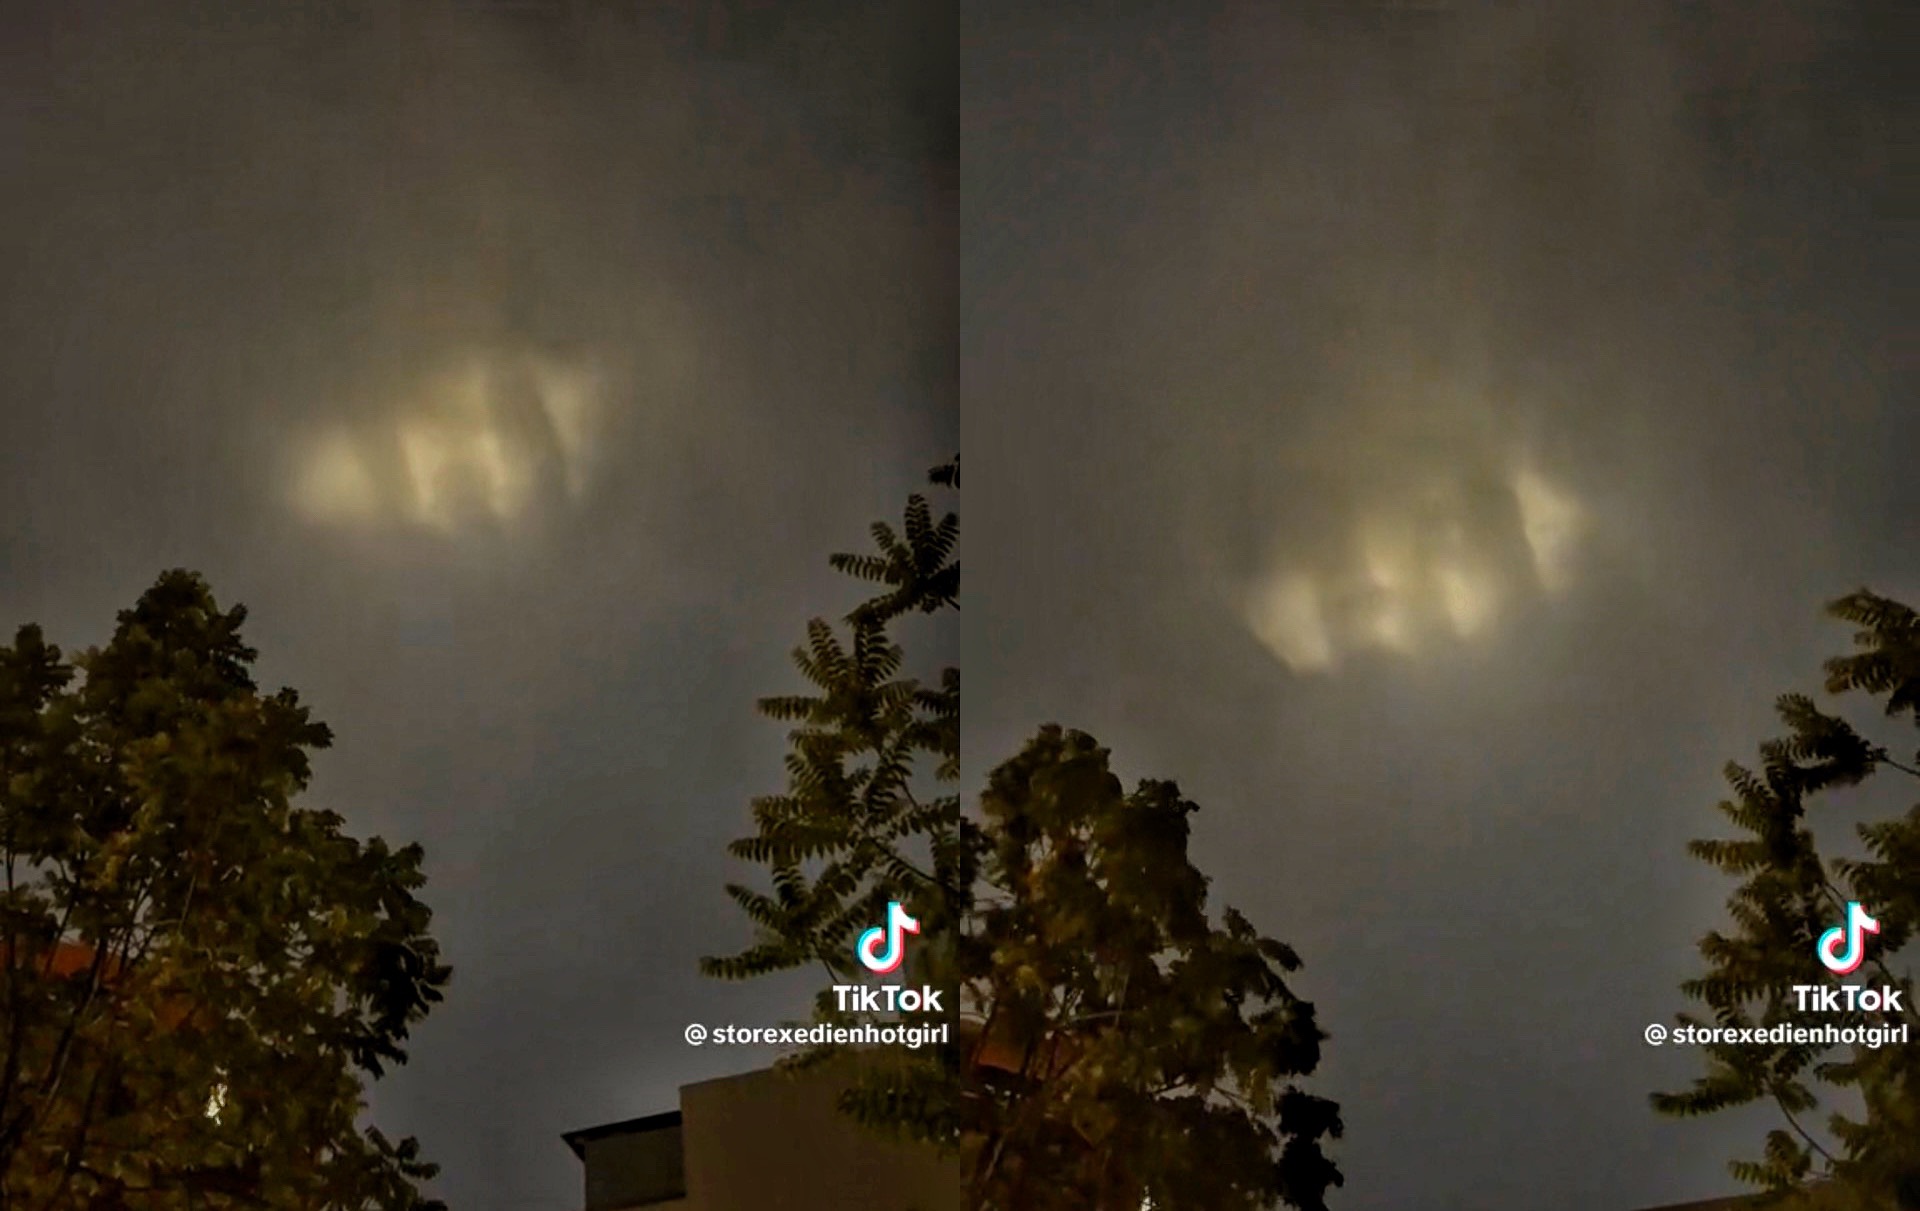 Clip đám mây phát sáng ‘hình bàn tay' trong đêm giông khiến nhiều người tò mò - Ảnh 1.